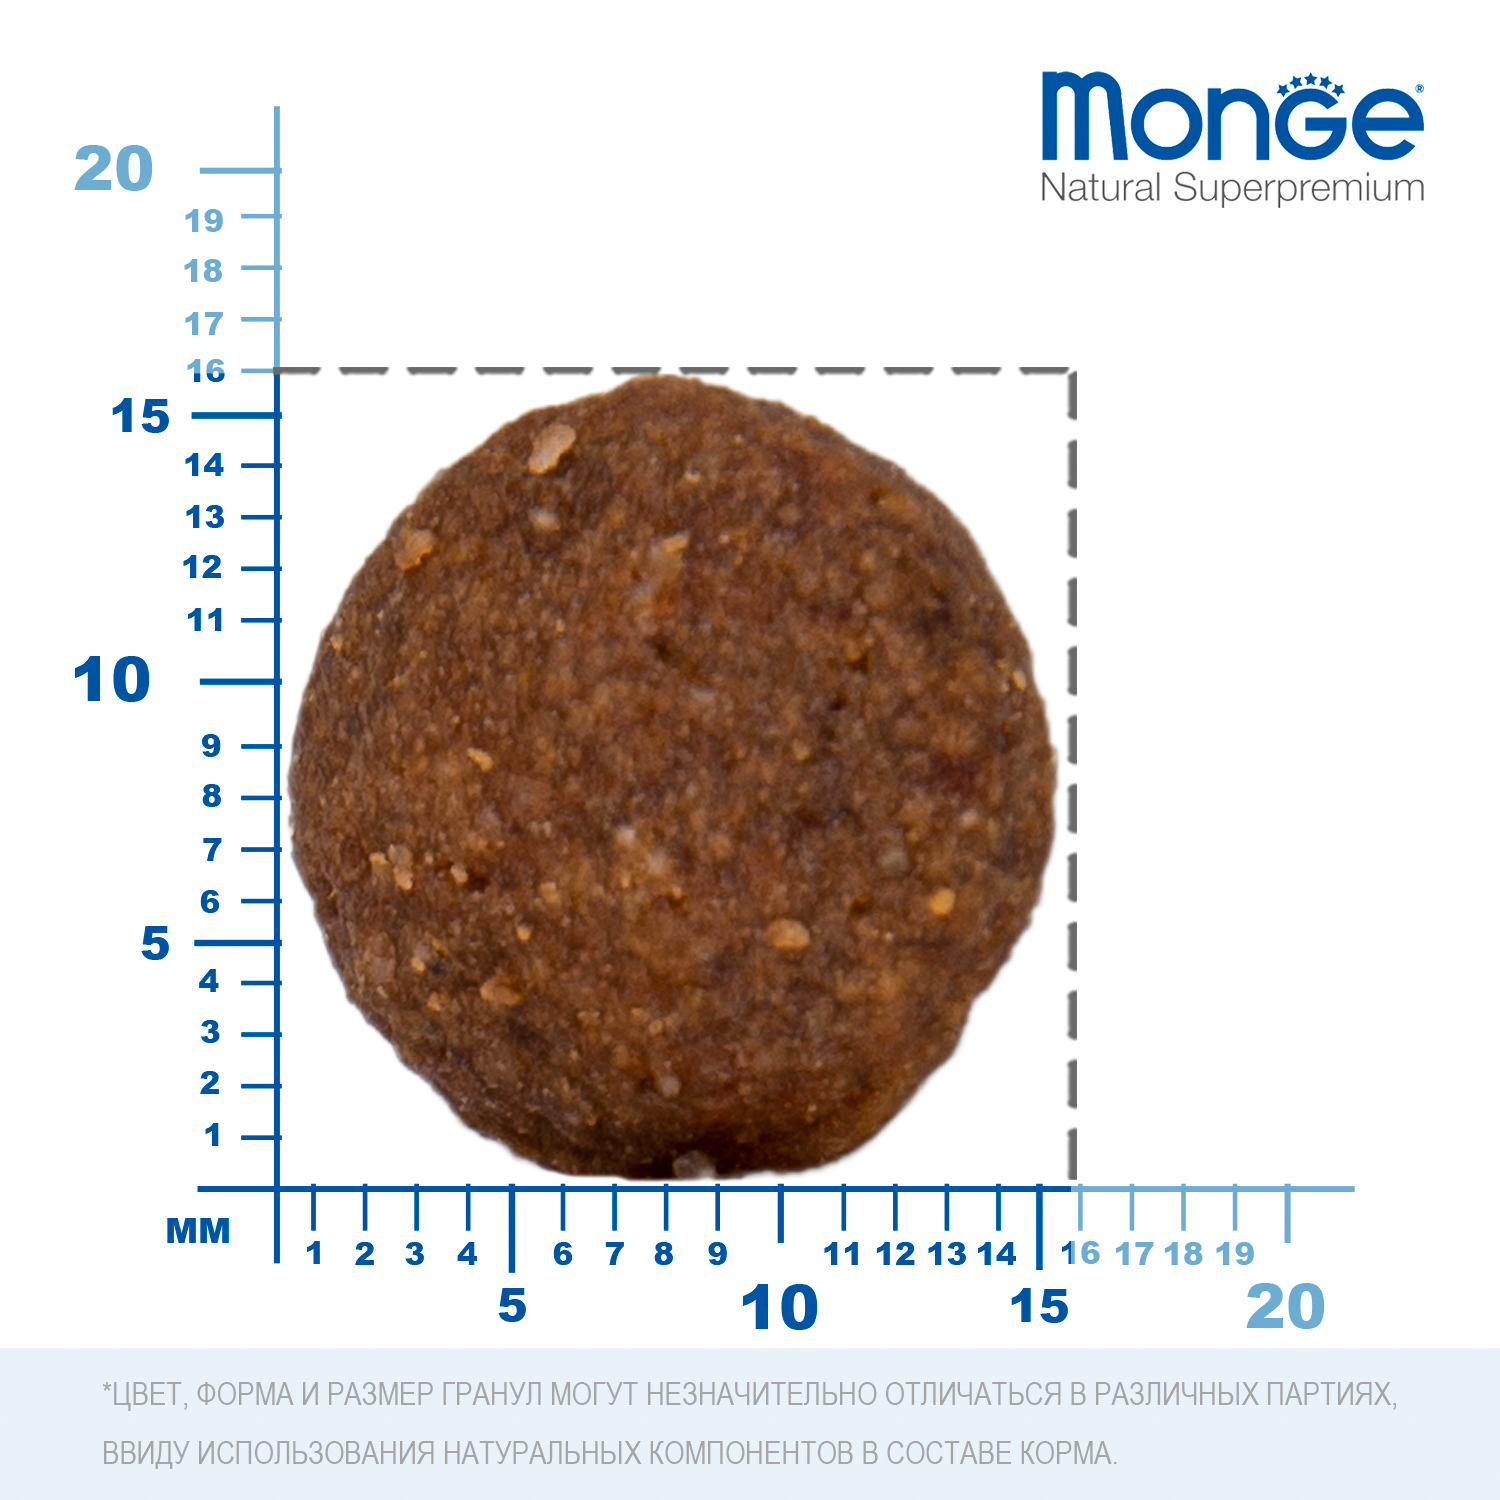 Сухой корм Monge Dog Speciality Line Monoprotein Puppy & Junior корм для щенков всех пород, из говядины с рисом 12 кг